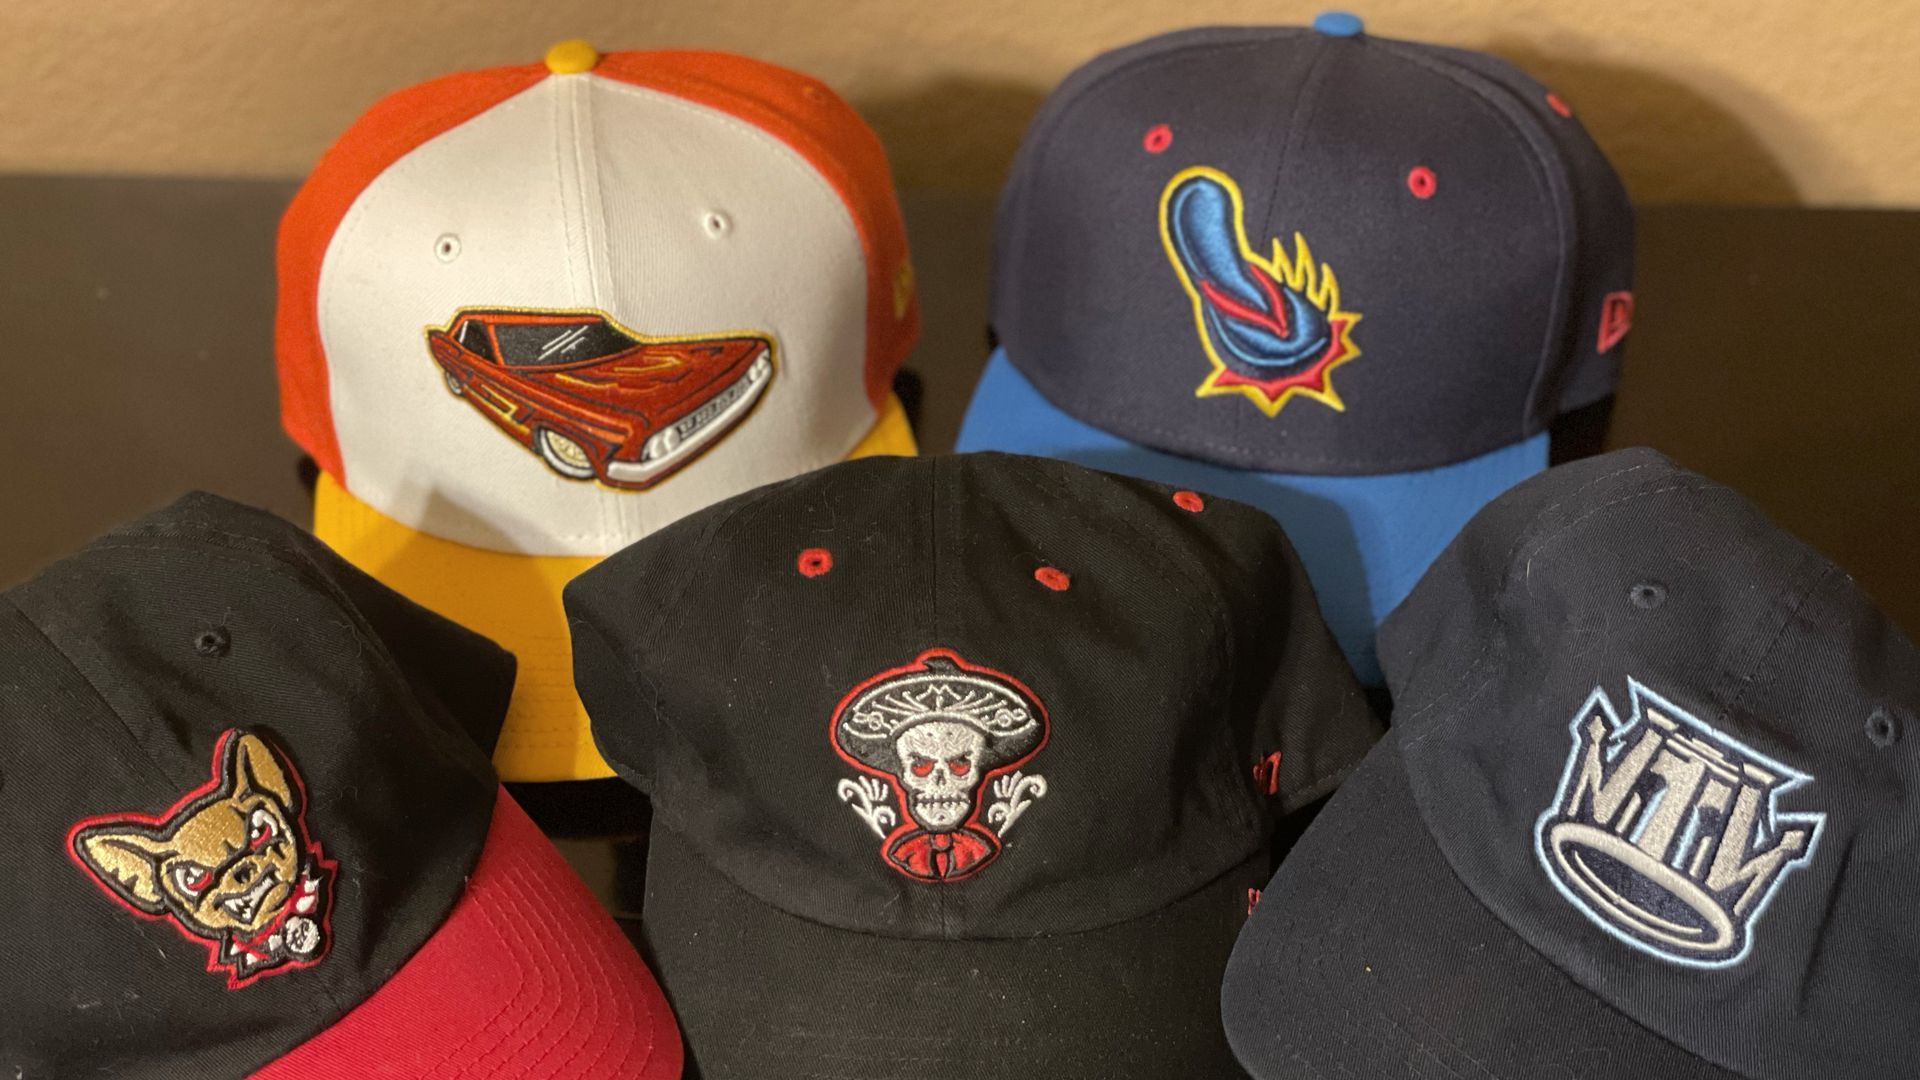 Team hats for the Lowriders de Fresno, the Flying Chanclas de San Antonio and the Mariachis de Nuevo México,  some of the teams in Minor League Baseball's Copa de la Diversión.